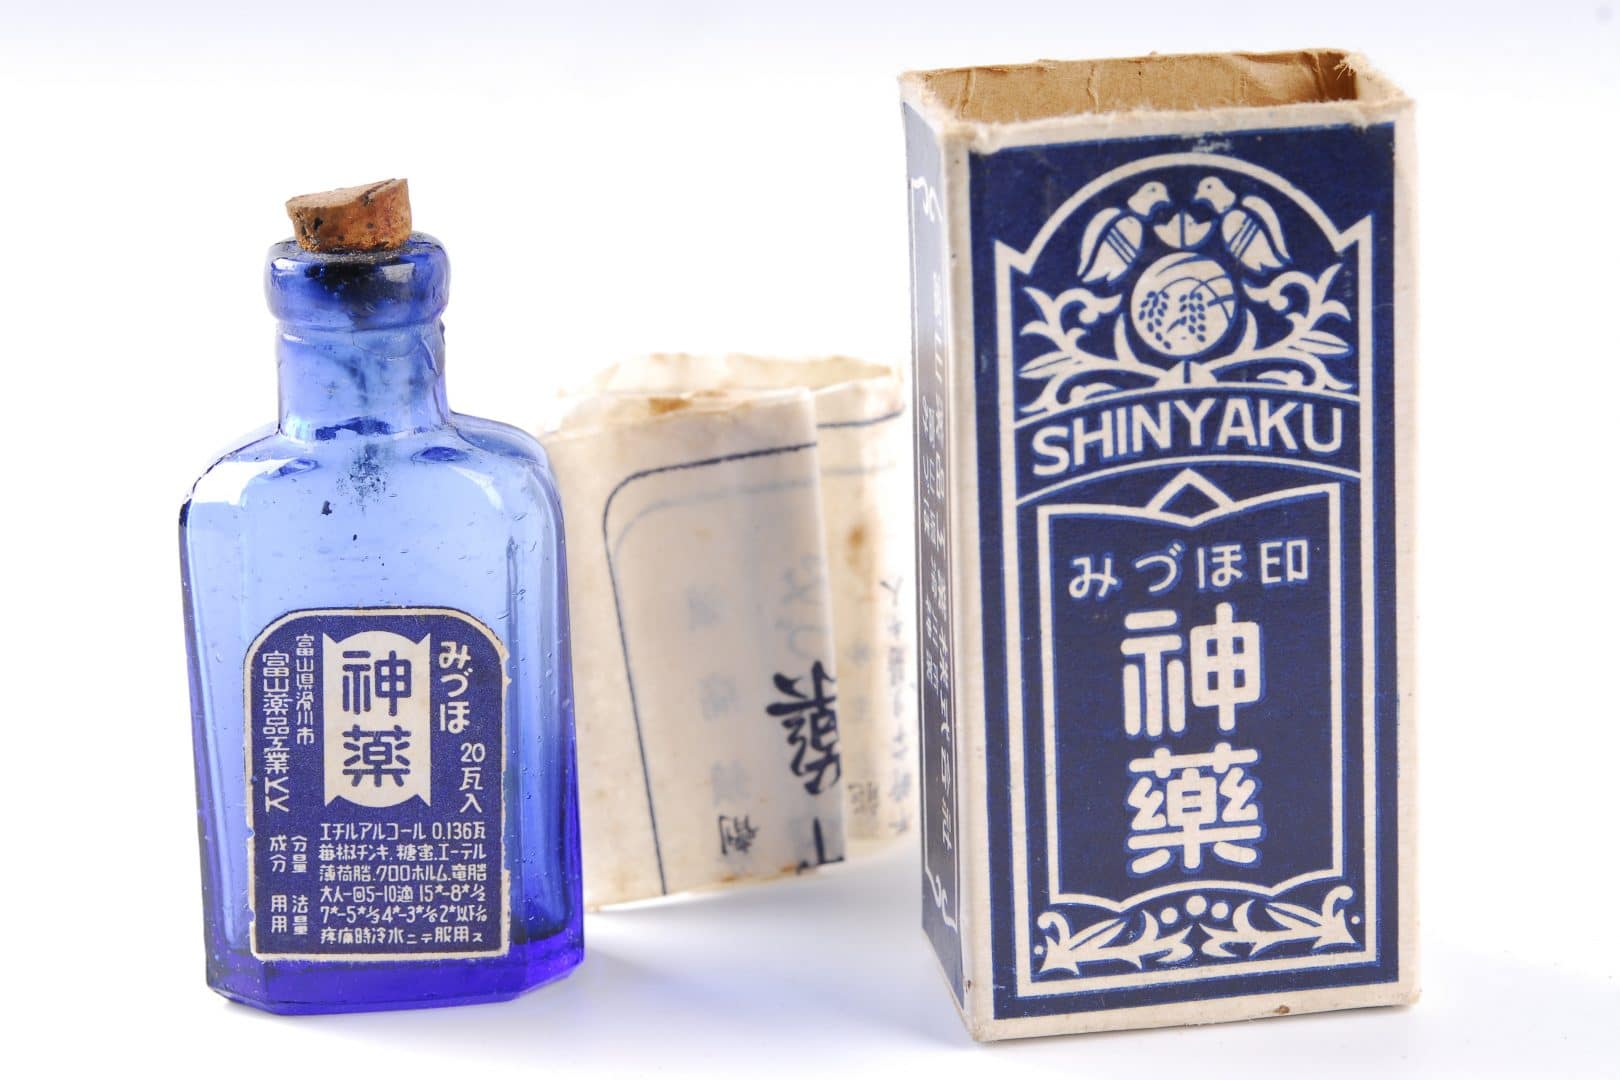 Antique Japanese medicine bottle